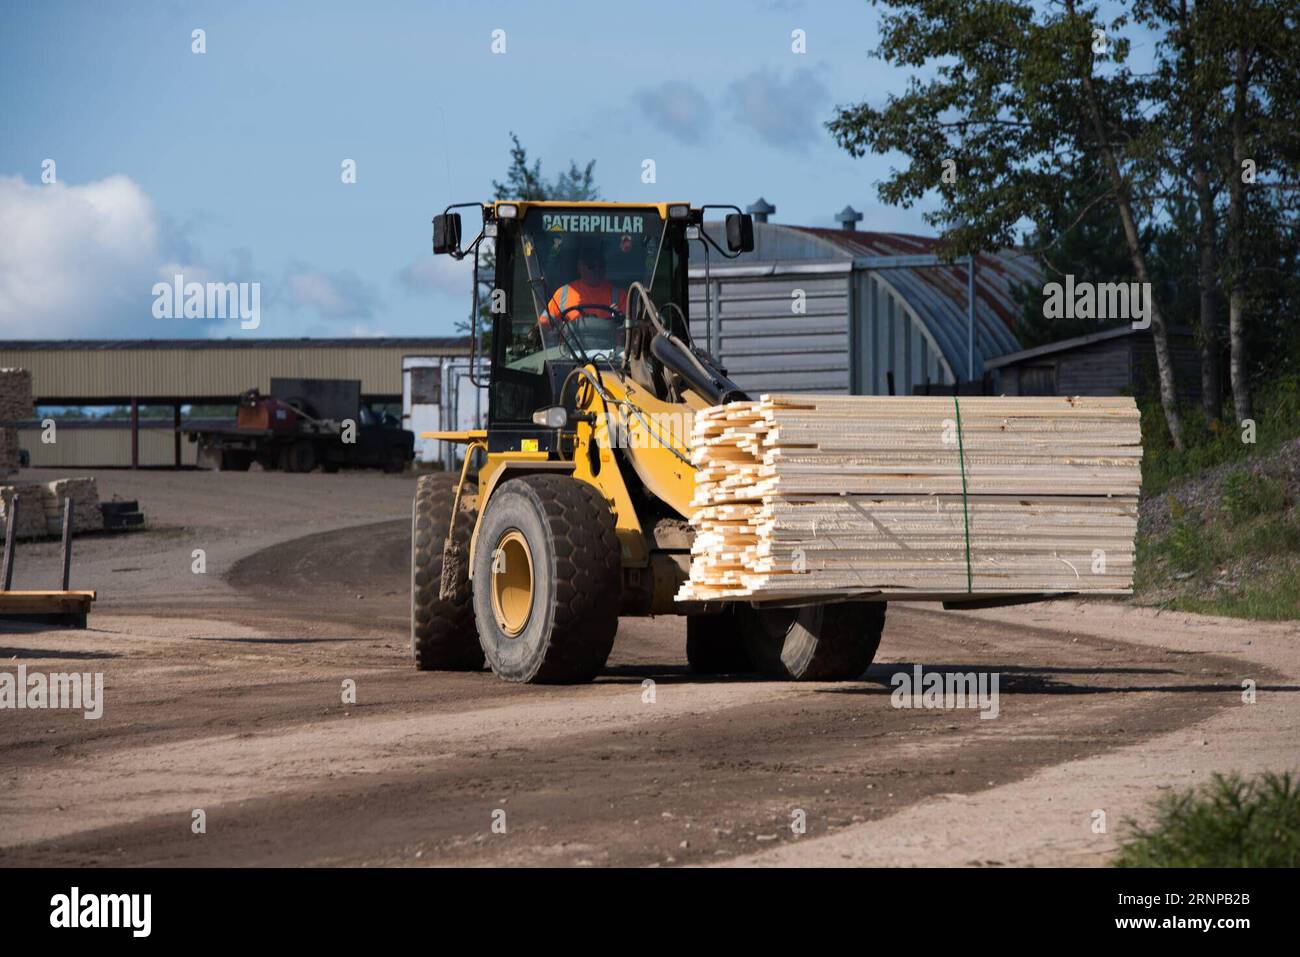 (170819) -- TORONTO (CANADA), le 19 août 2017 -- les planches à sécher sont transportées chez un fabricant de bois de la Murray Brothers Lumber Company, en Ontario, au Canada, le 16 août 2017. Les États-Unis ont ouvert mercredi la renégociation de l’Accord de libre-échange nord-américain (ALENA), vieux de 23 ans, avec une déclaration selon laquelle ils veulent des changements majeurs à l’accord qui modifient la balance commerciale. Toutefois, les propriétaires d’entreprises canadiennes espèrent que les négociateurs américains seront réceptifs au maintien, sinon à l’amélioration, de la circulation actuelle des marchandises et des travailleurs à la frontière. Les querelles sur le bois d'oeuvre résineux ont été un recul Banque D'Images